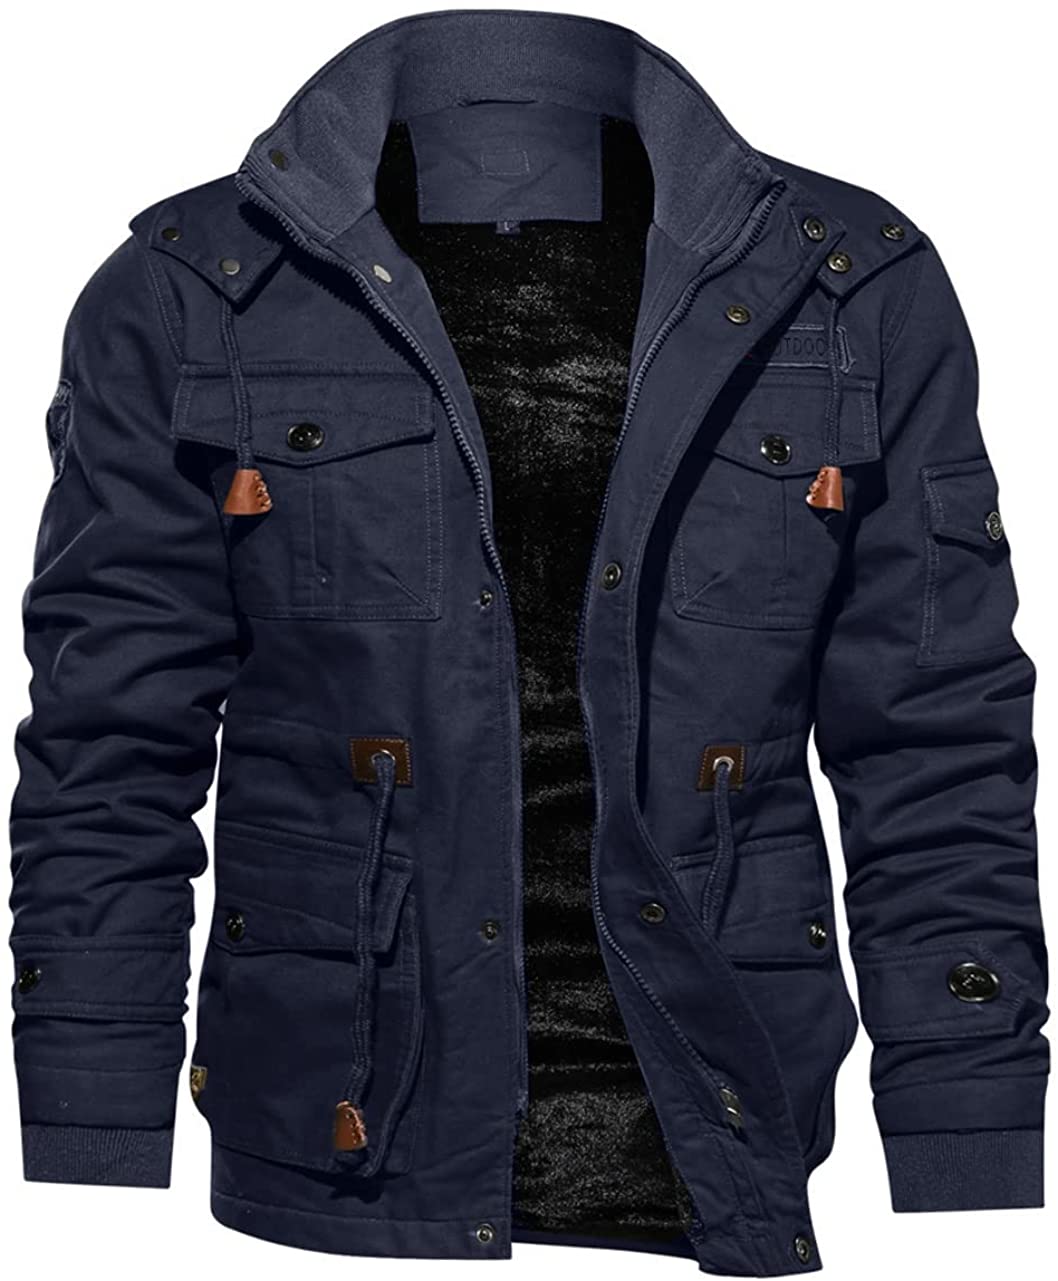 Cargo Jacket, Men's Winter Jacket